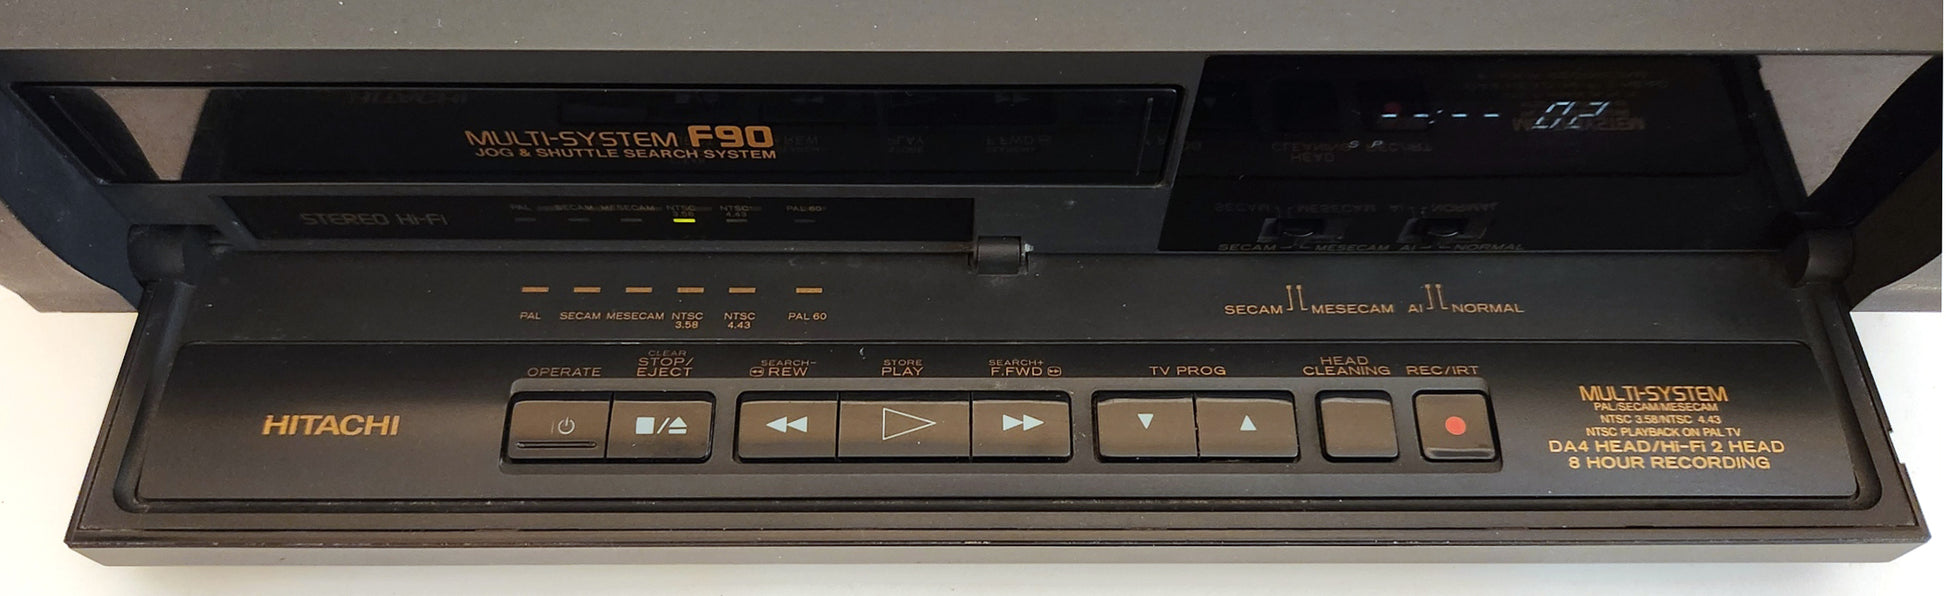 Hitachi VT-F90EM(JU) VCR, Multi-System 4-Head Hi-Fi Stereo - Panel Detail